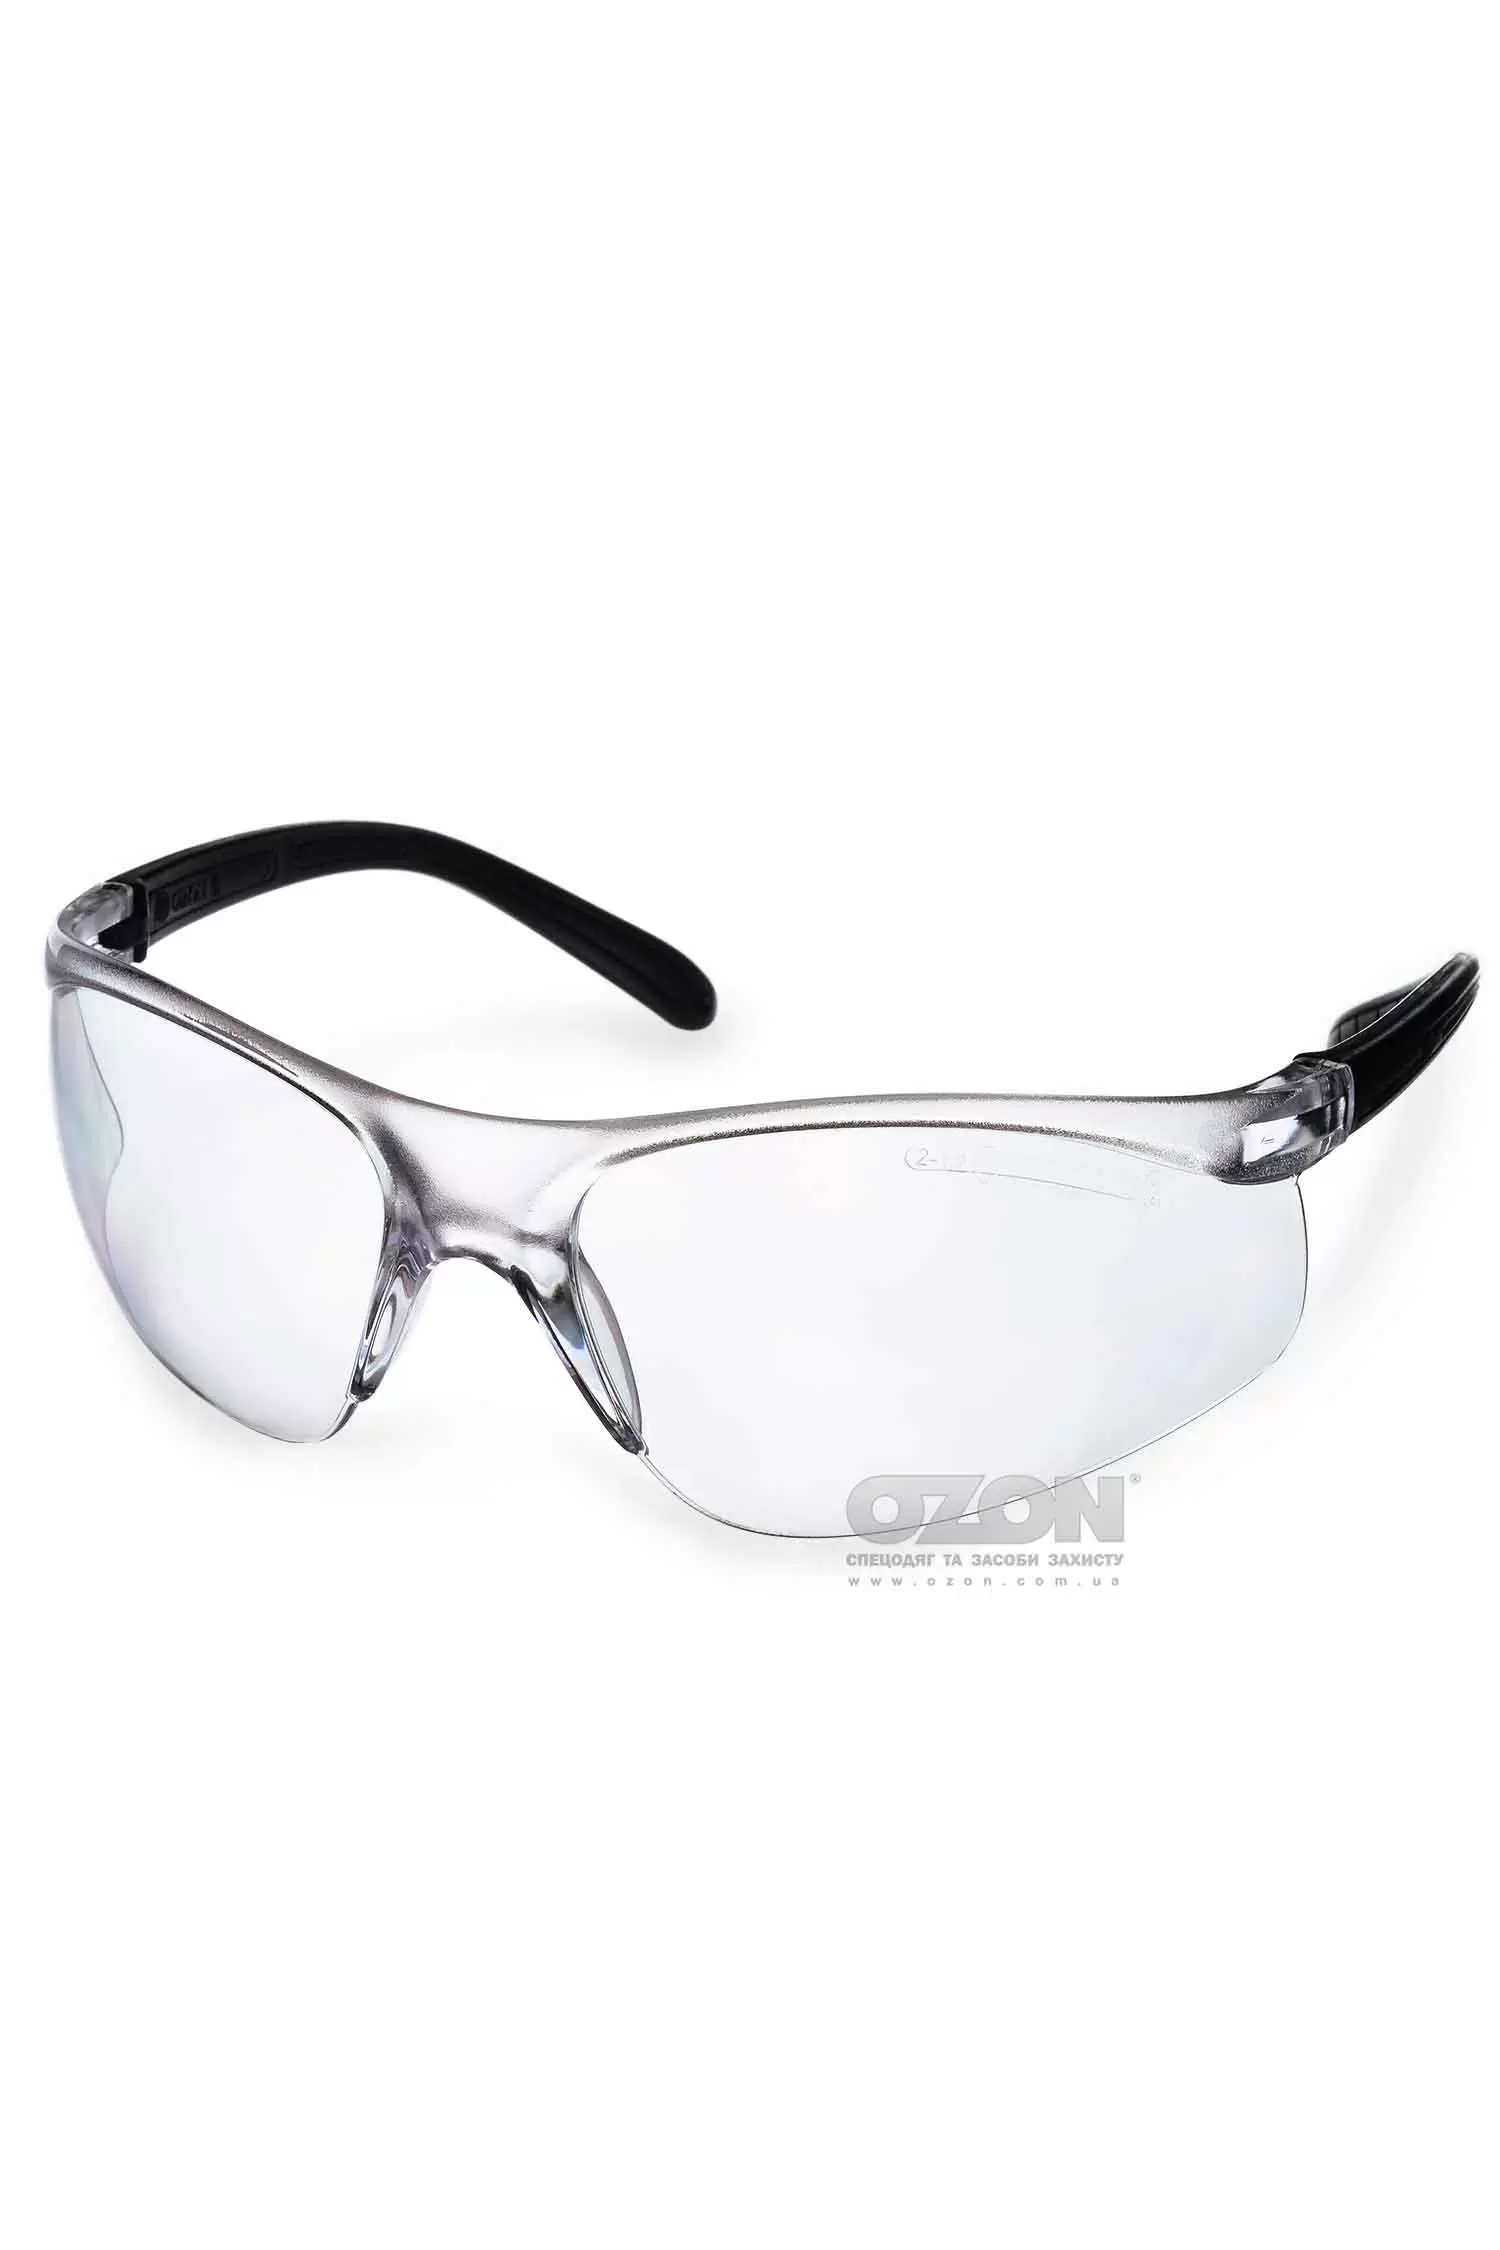 Защитные очки OZON™ 7-081 - Фото 1